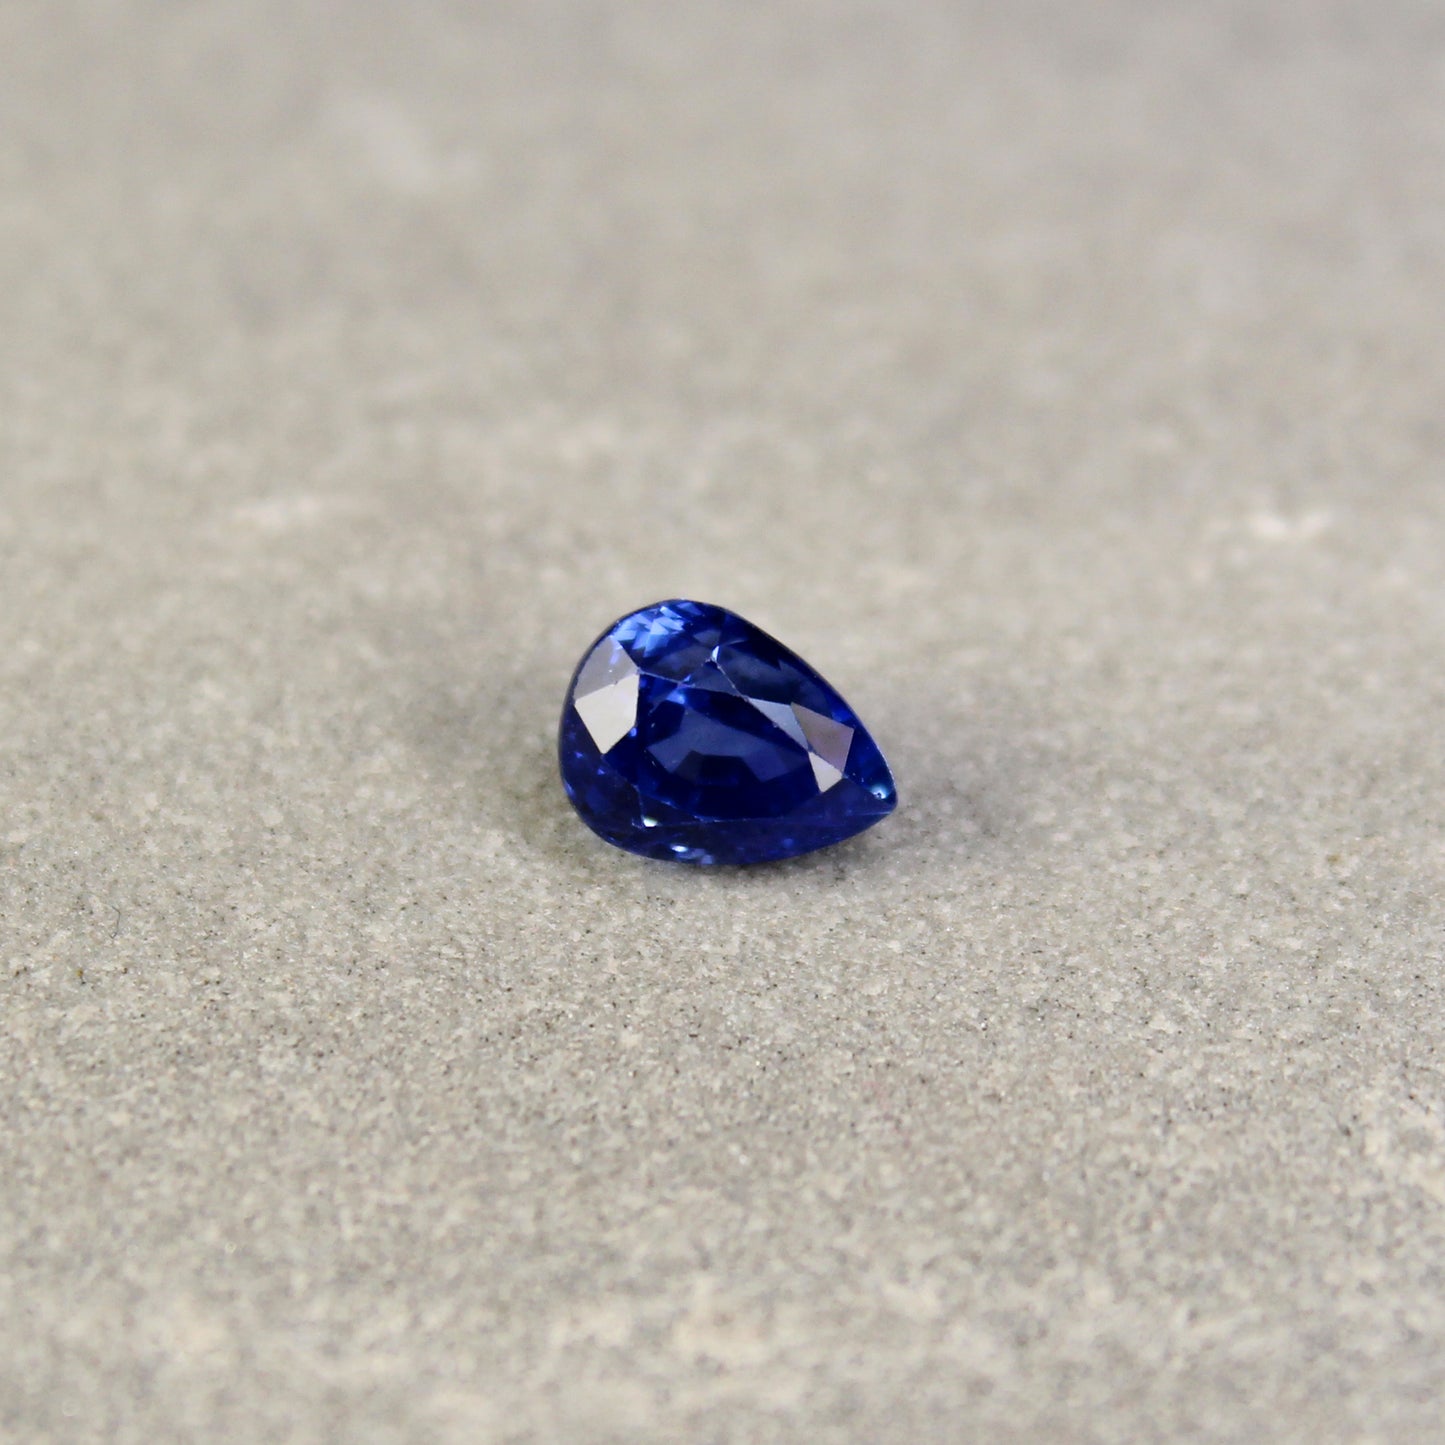 1.46ct Pear Shape Sapphire, Heated, Sri Lanka - 6.83 x 5.19 x 5.01mm